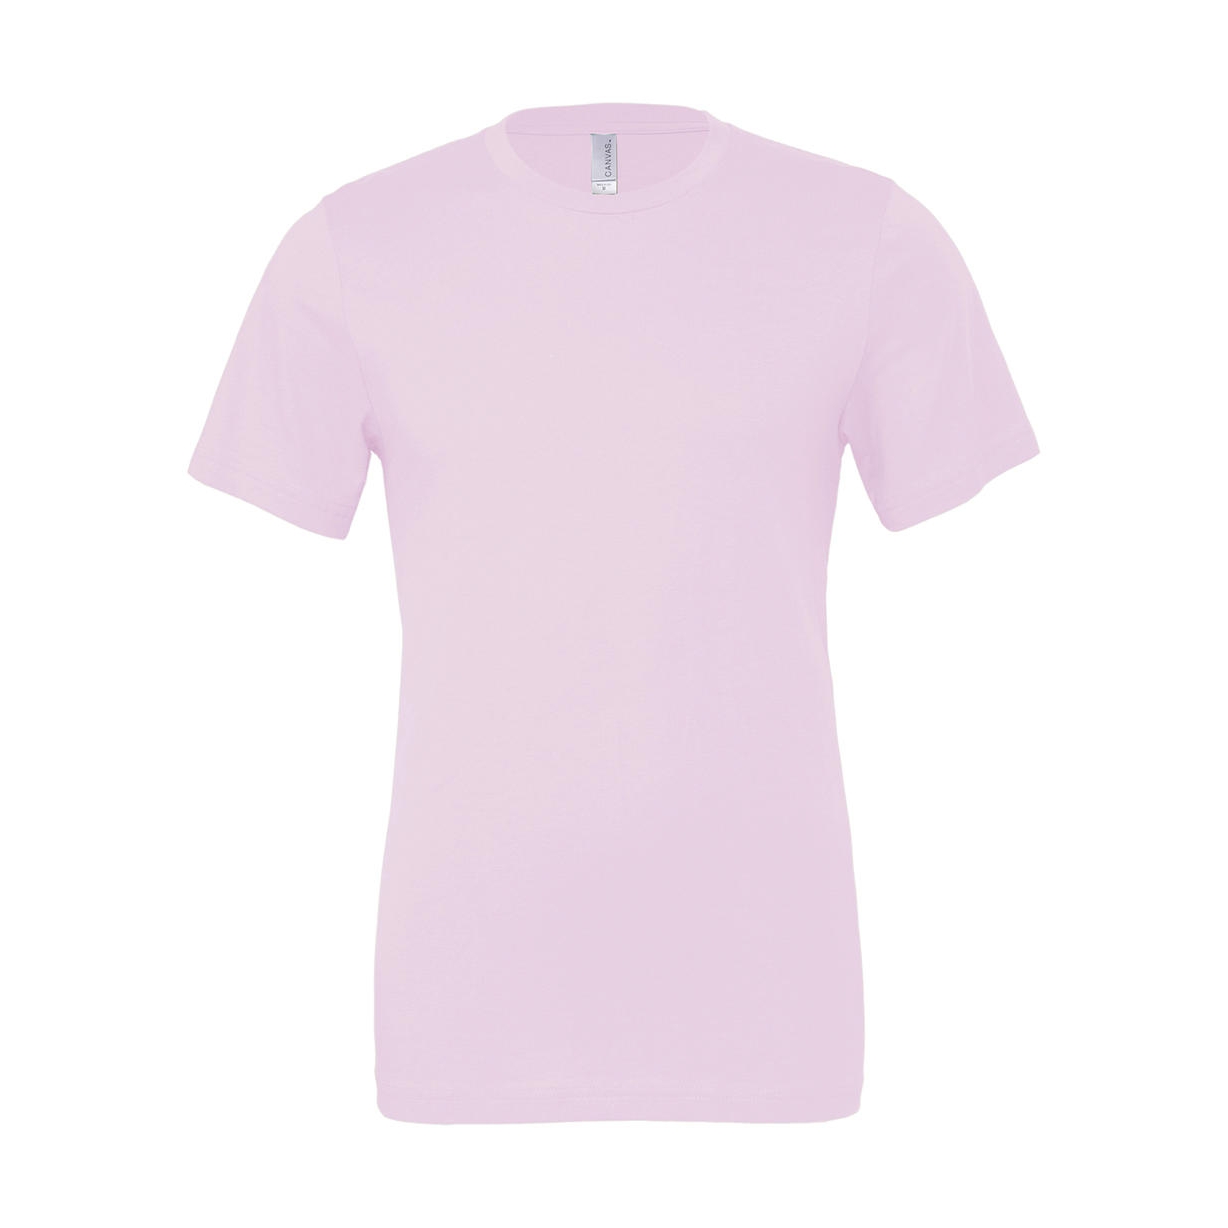 Tričko Bella Jersey - světle růžové, XL